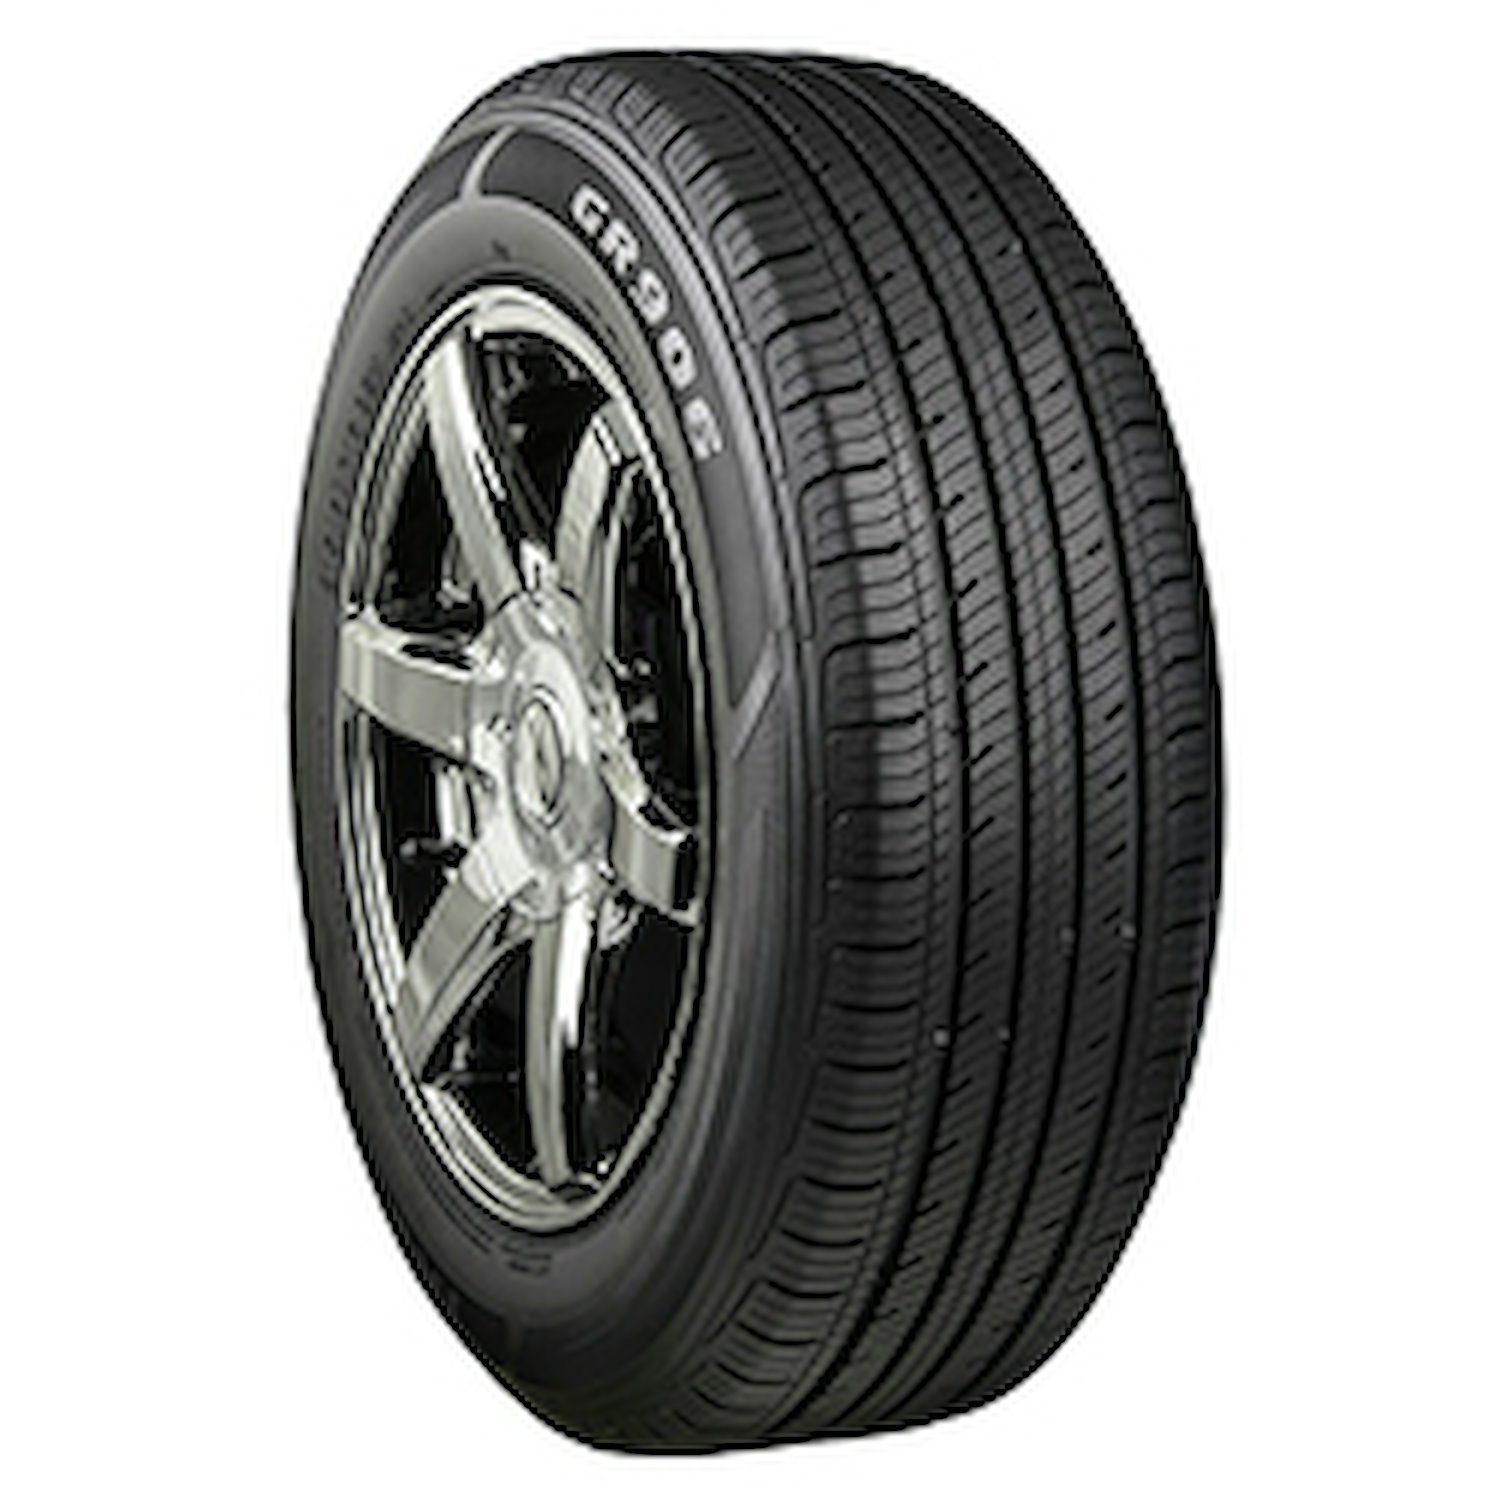 GR906 Tire, 195/60R15 88H